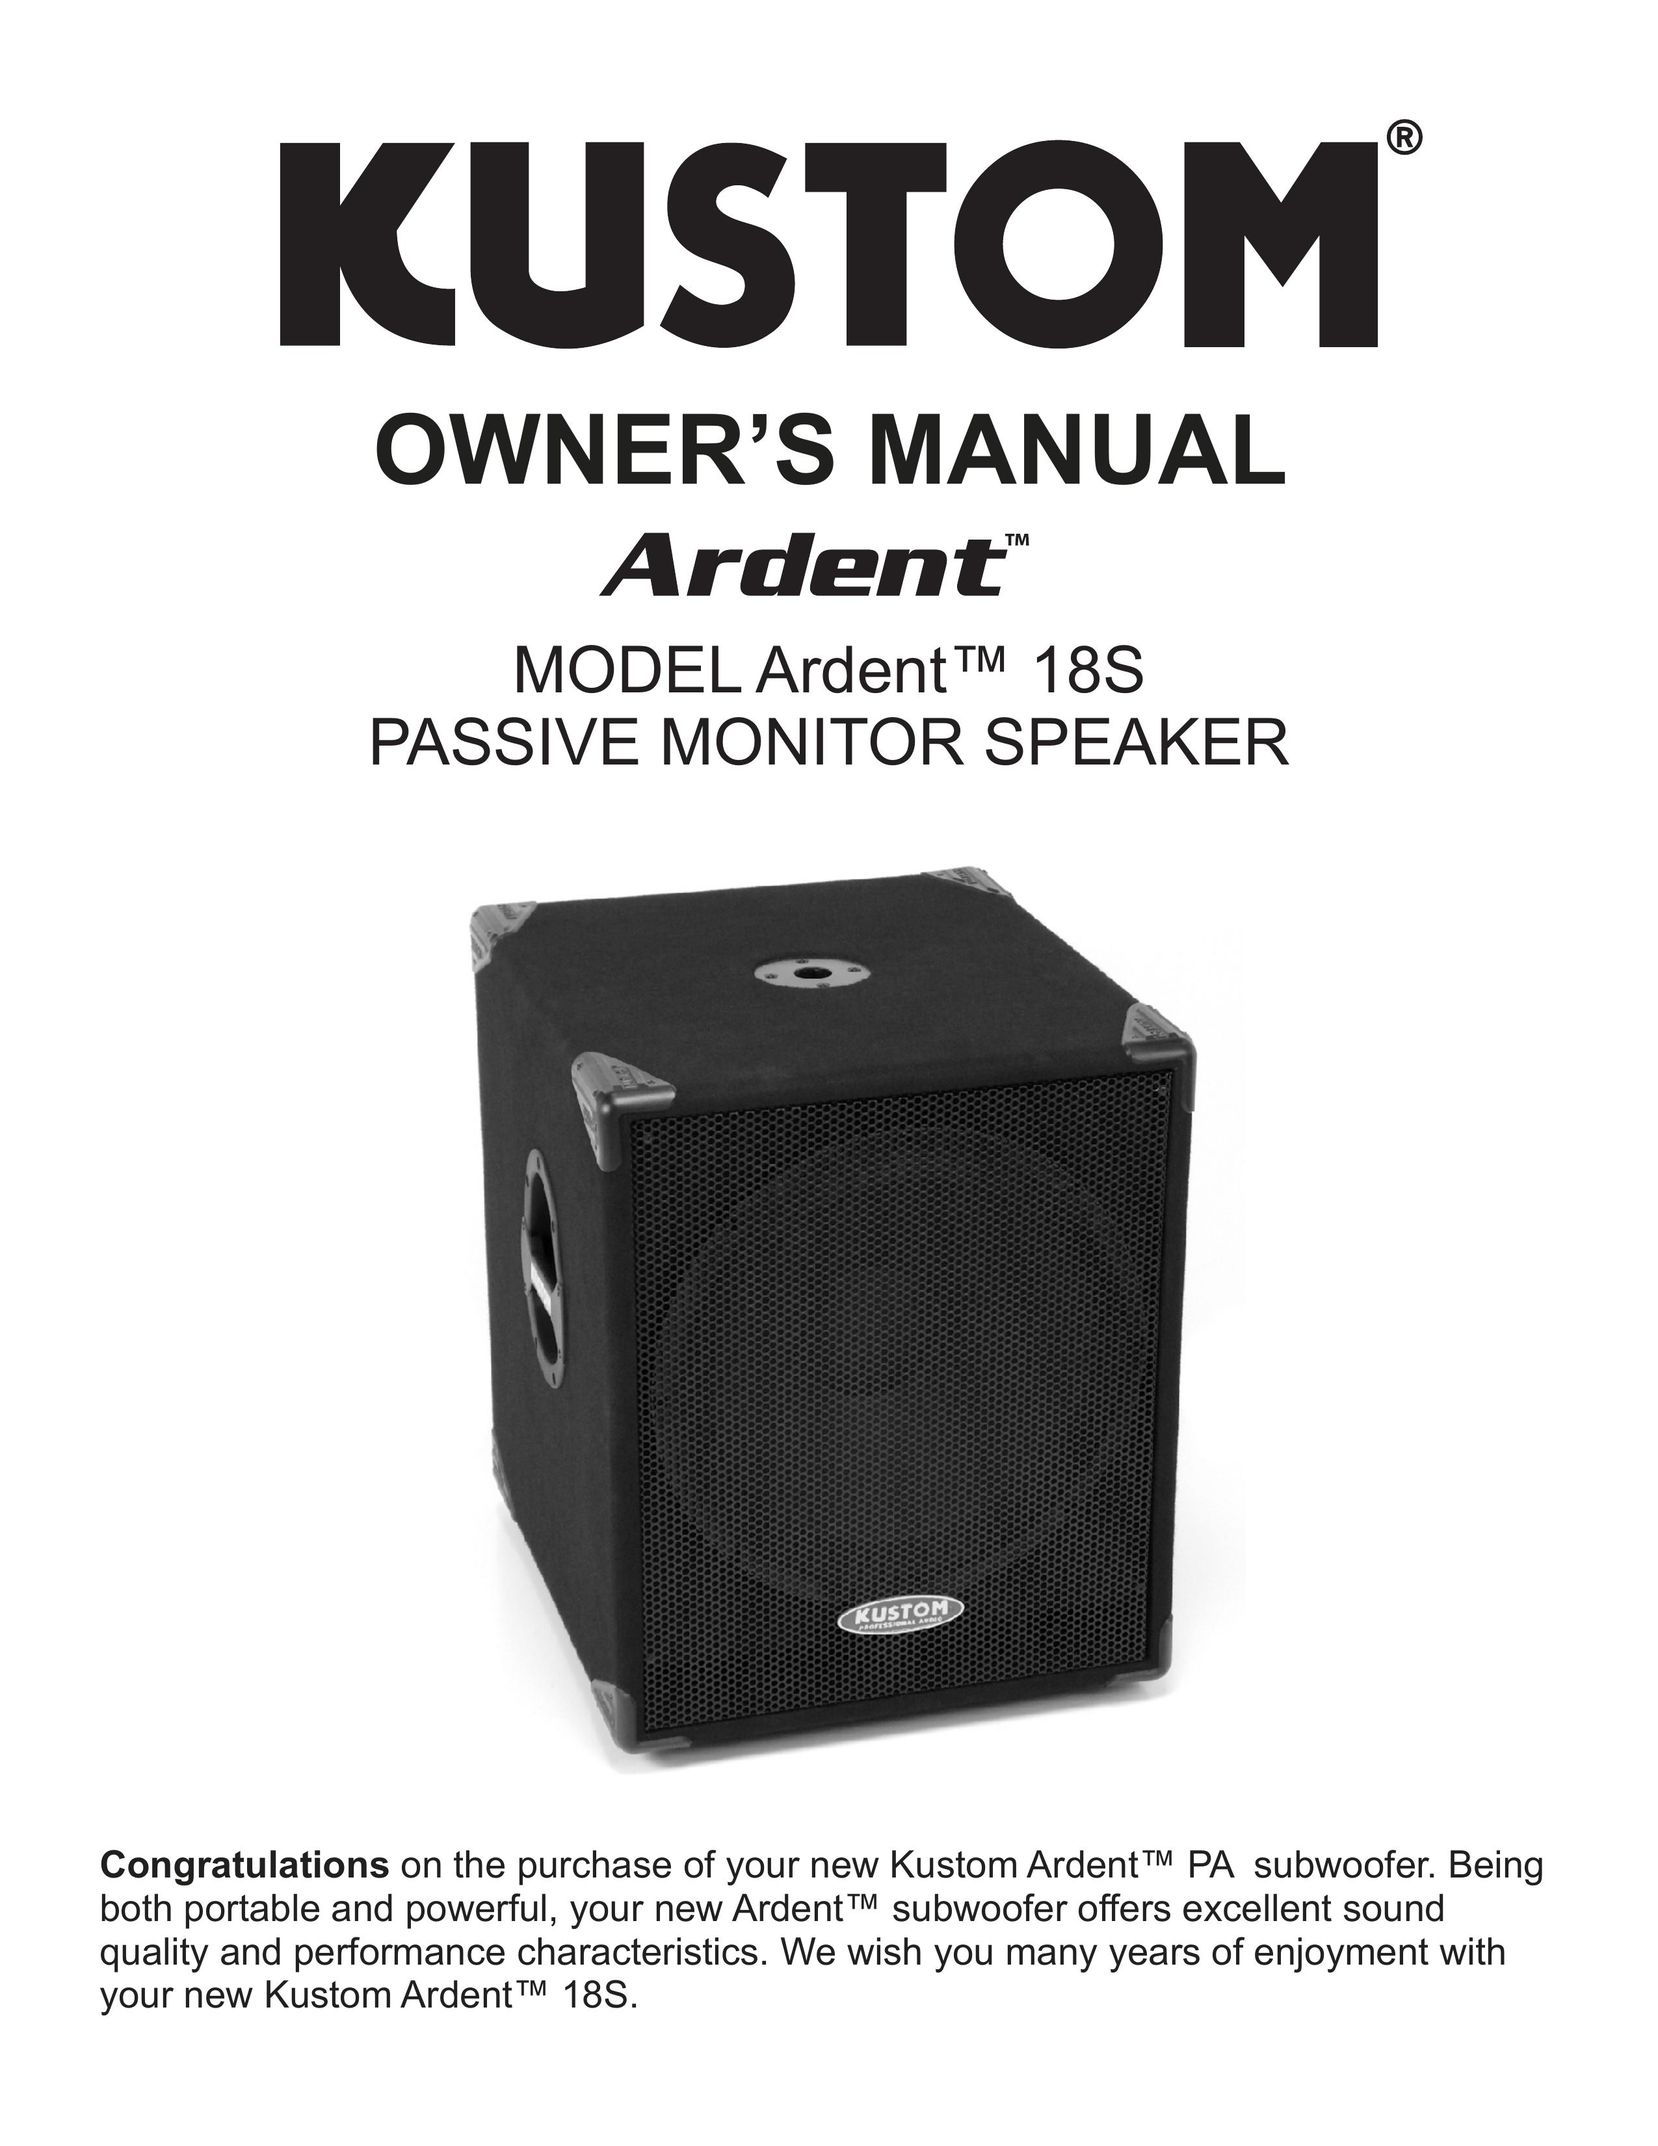 Kustom Ardent 18S Speaker User Manual